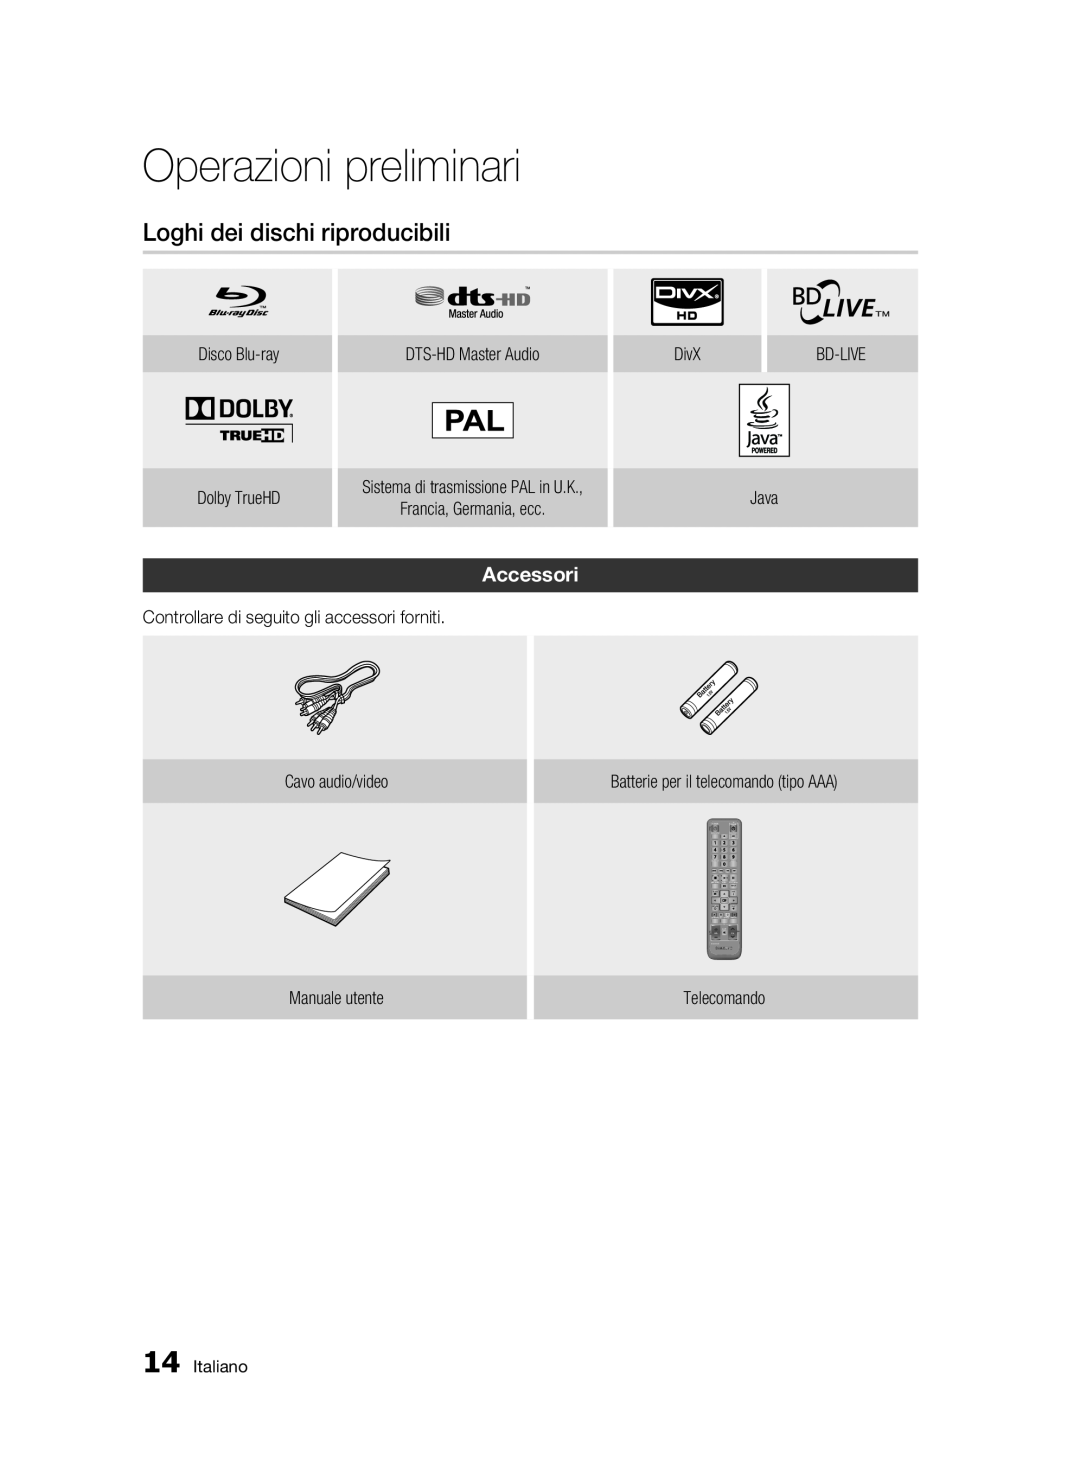 Samsung BD-C6500/XEF manual Loghi dei dischi riproducibili, Accessori, Operazioni preliminari 